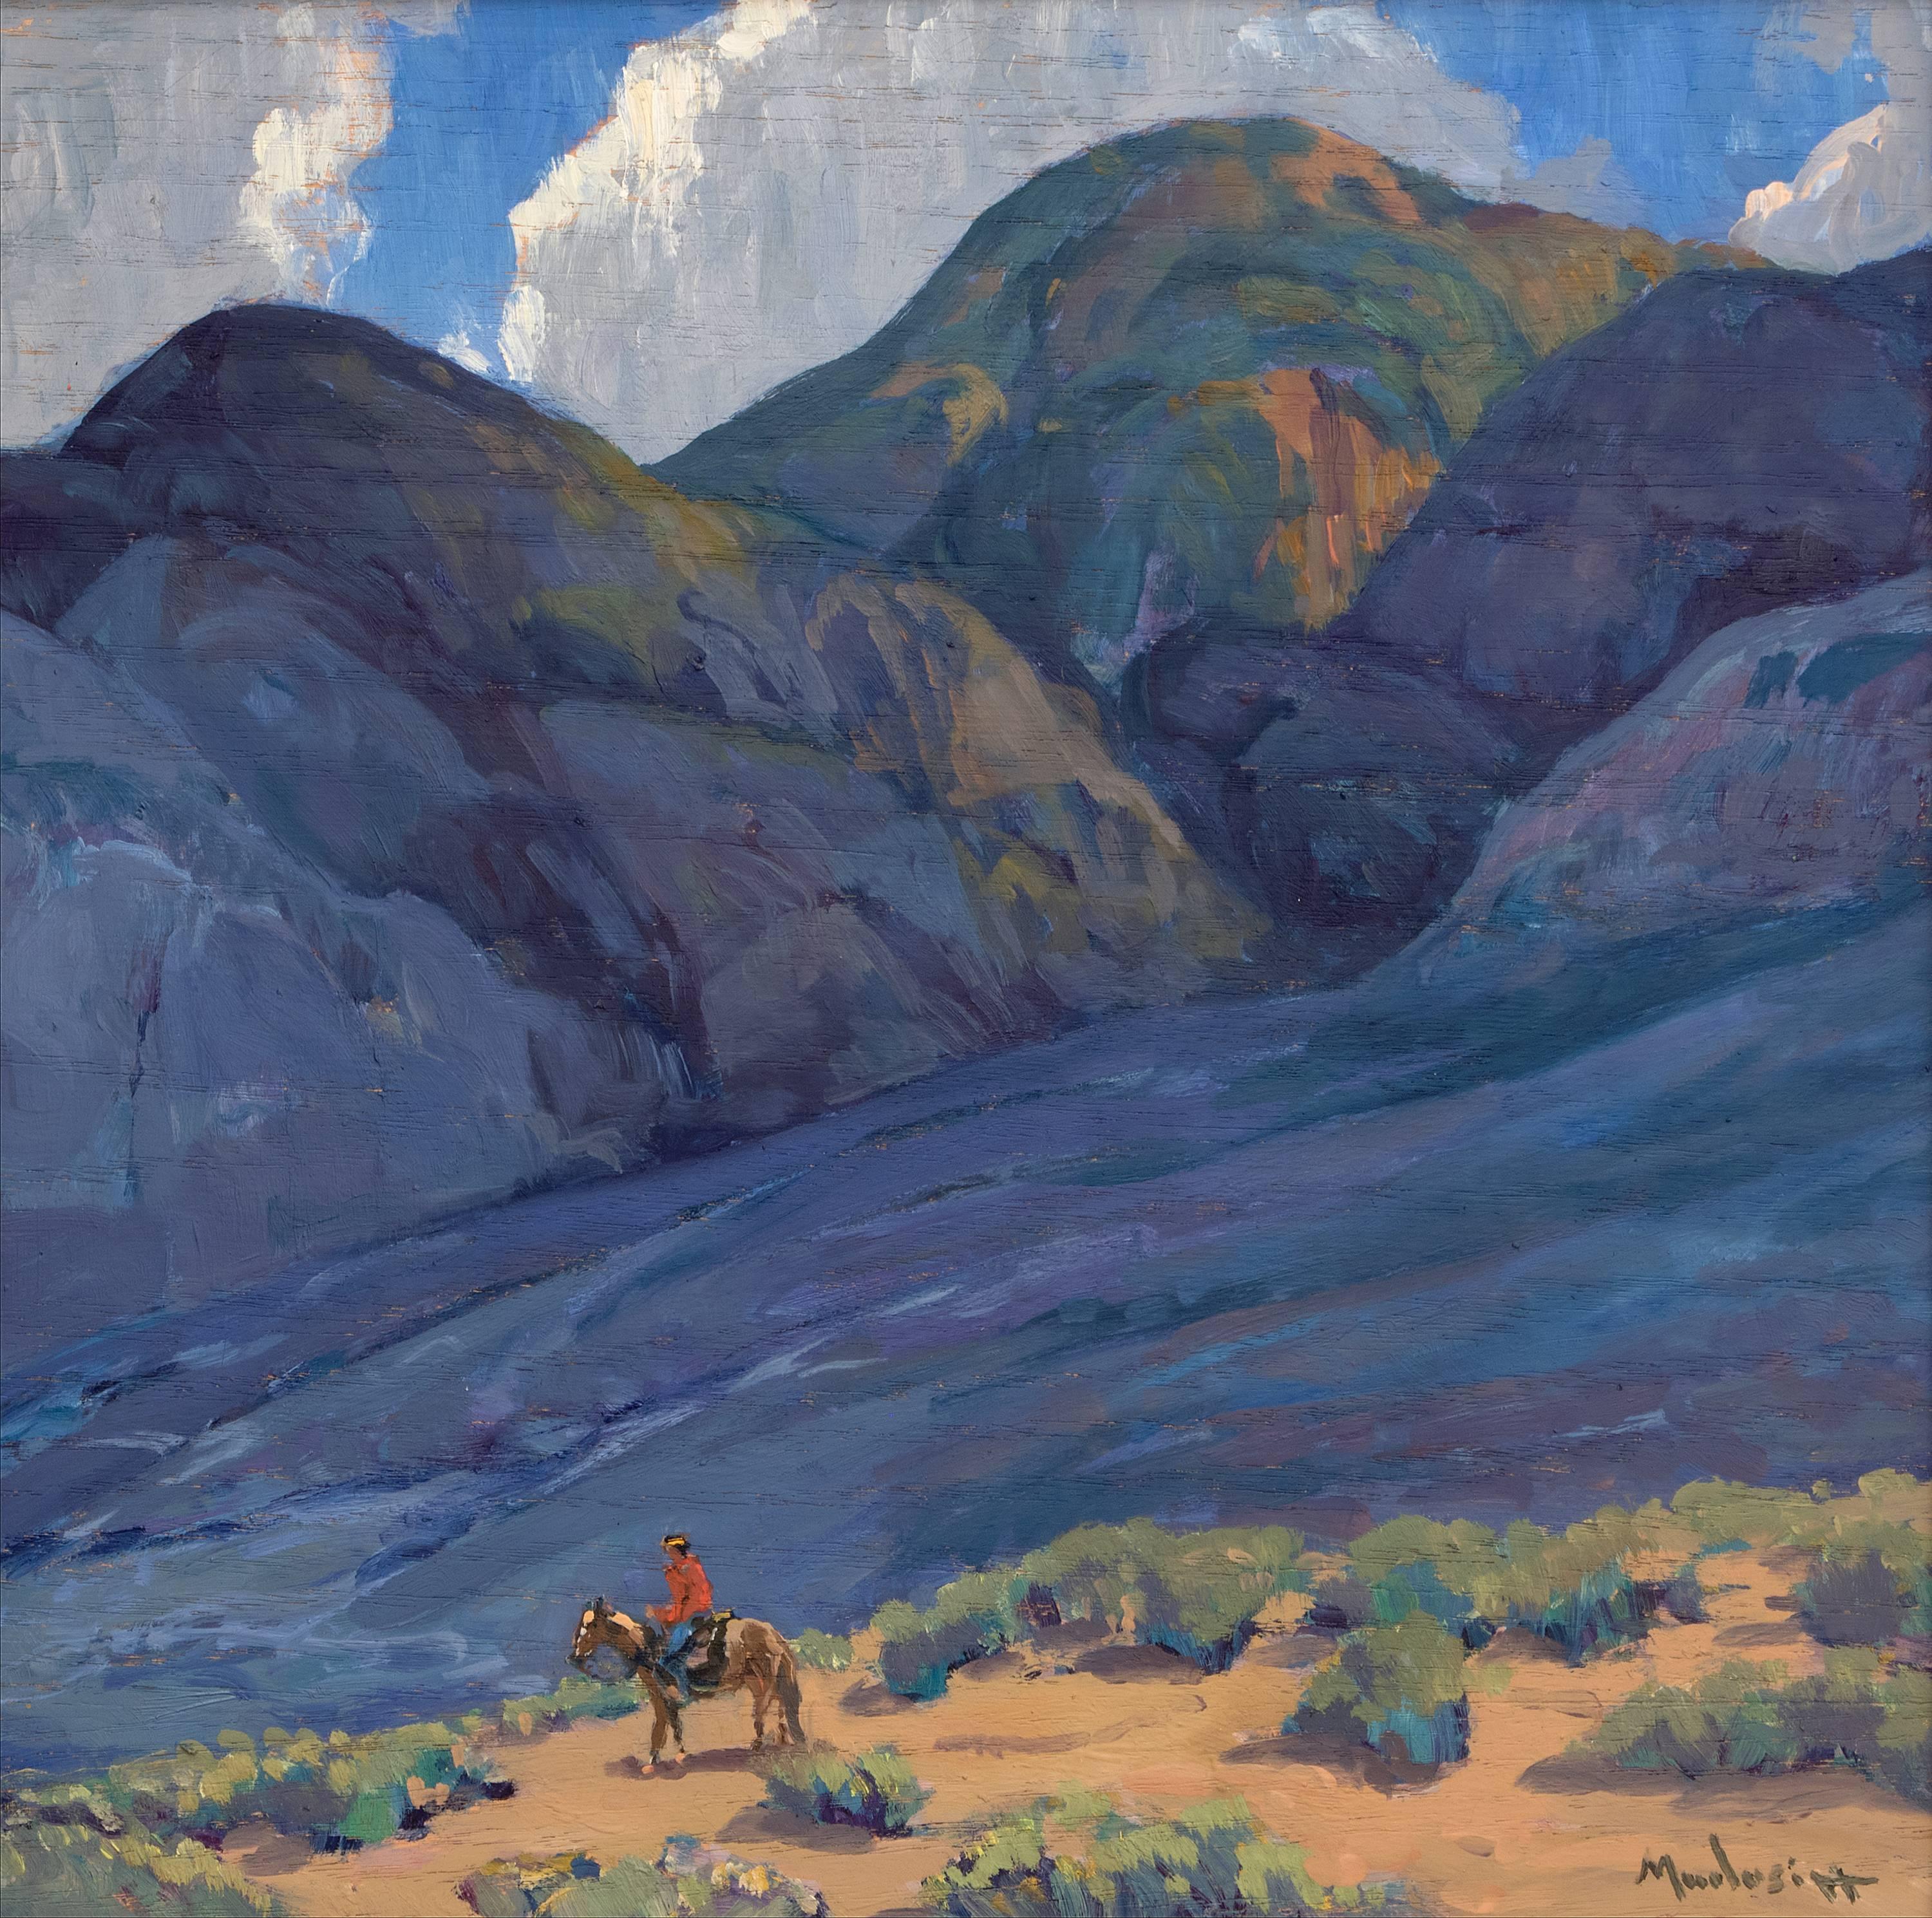 Near Taos (New Mexico) - Painting by John Modesitt